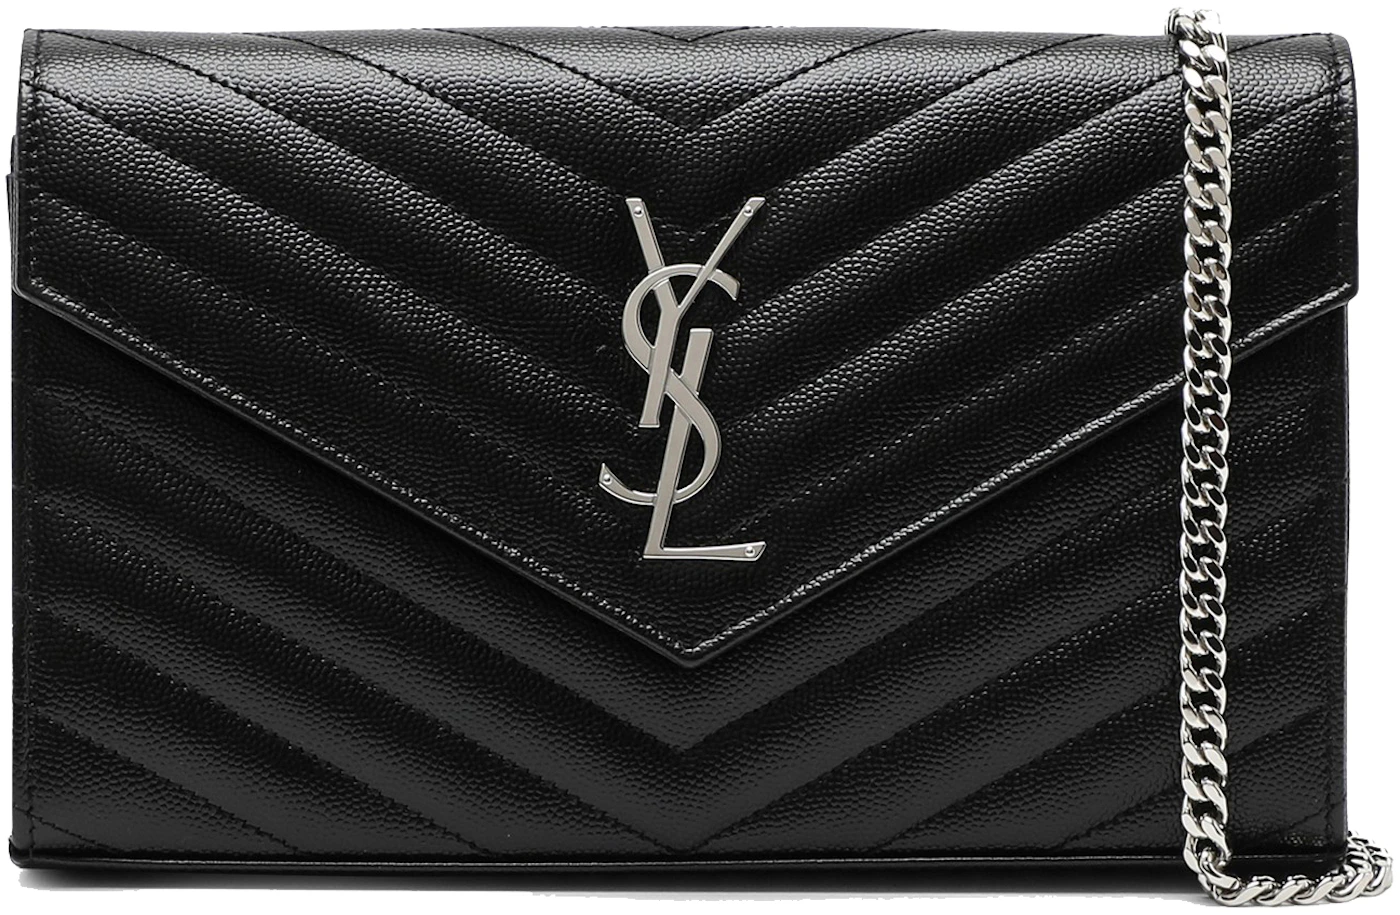 Saint Laurent Envelope Wallet Strap Black in Leather - US